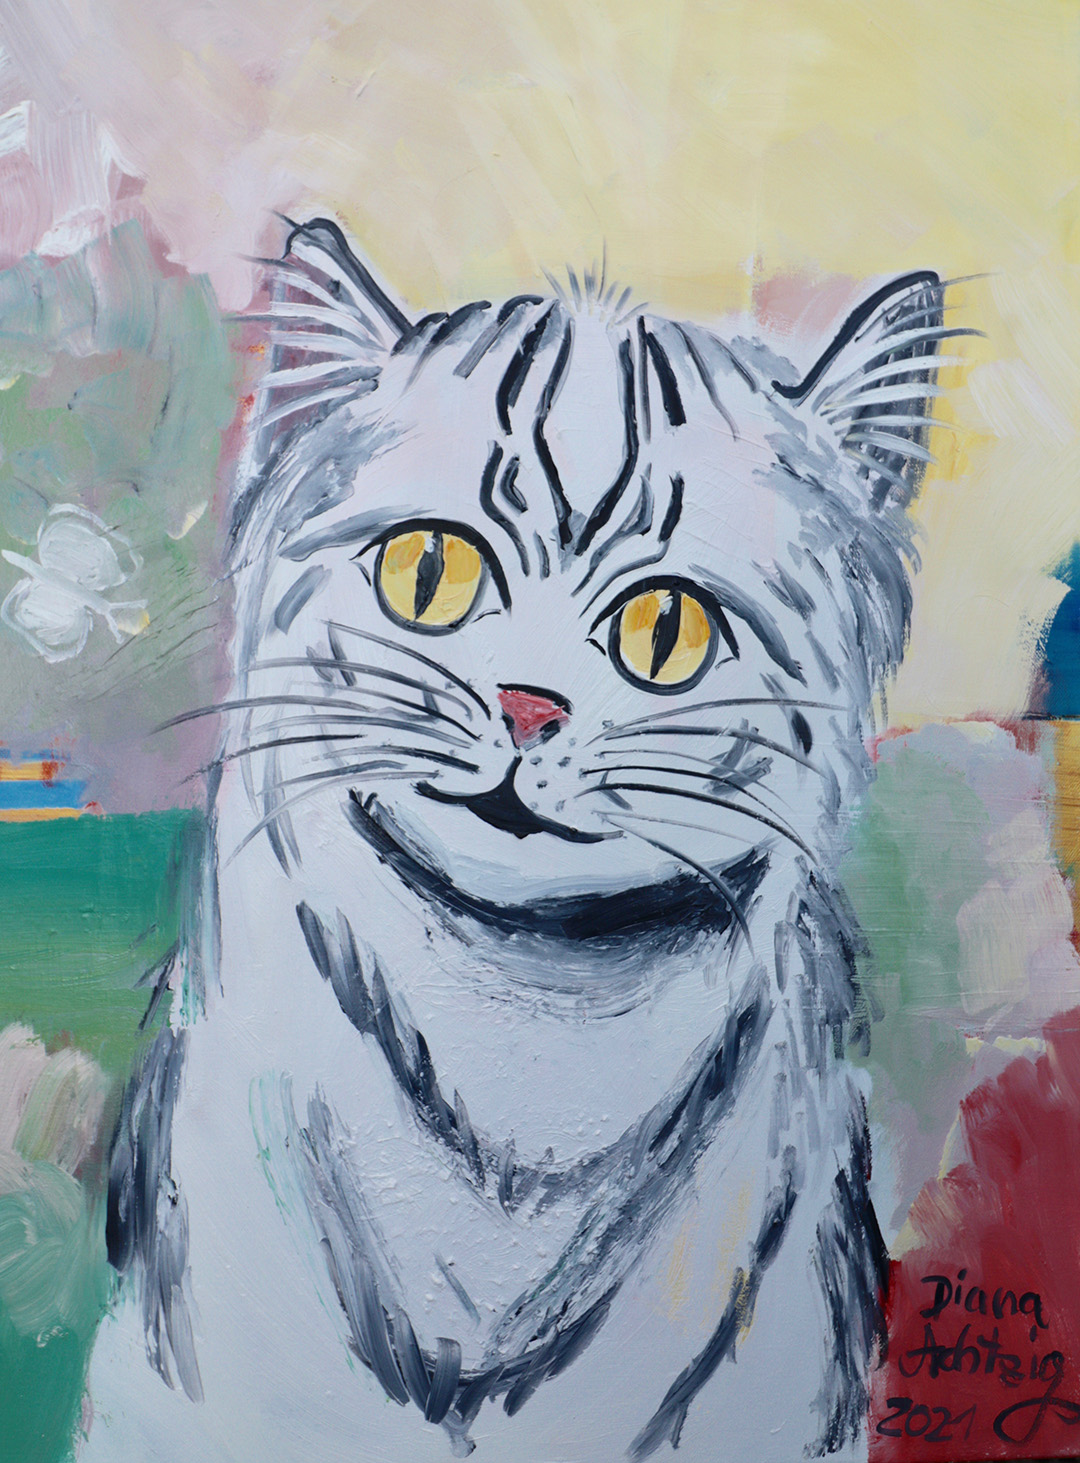 Kunst kaufen Tier Portrait Diana Achtzig: „Weiße Katze mit Schmetterling“, Ölbild auf Leinwand, 80 x 60 cm, Berlin, 2019 – 2021, 550 €